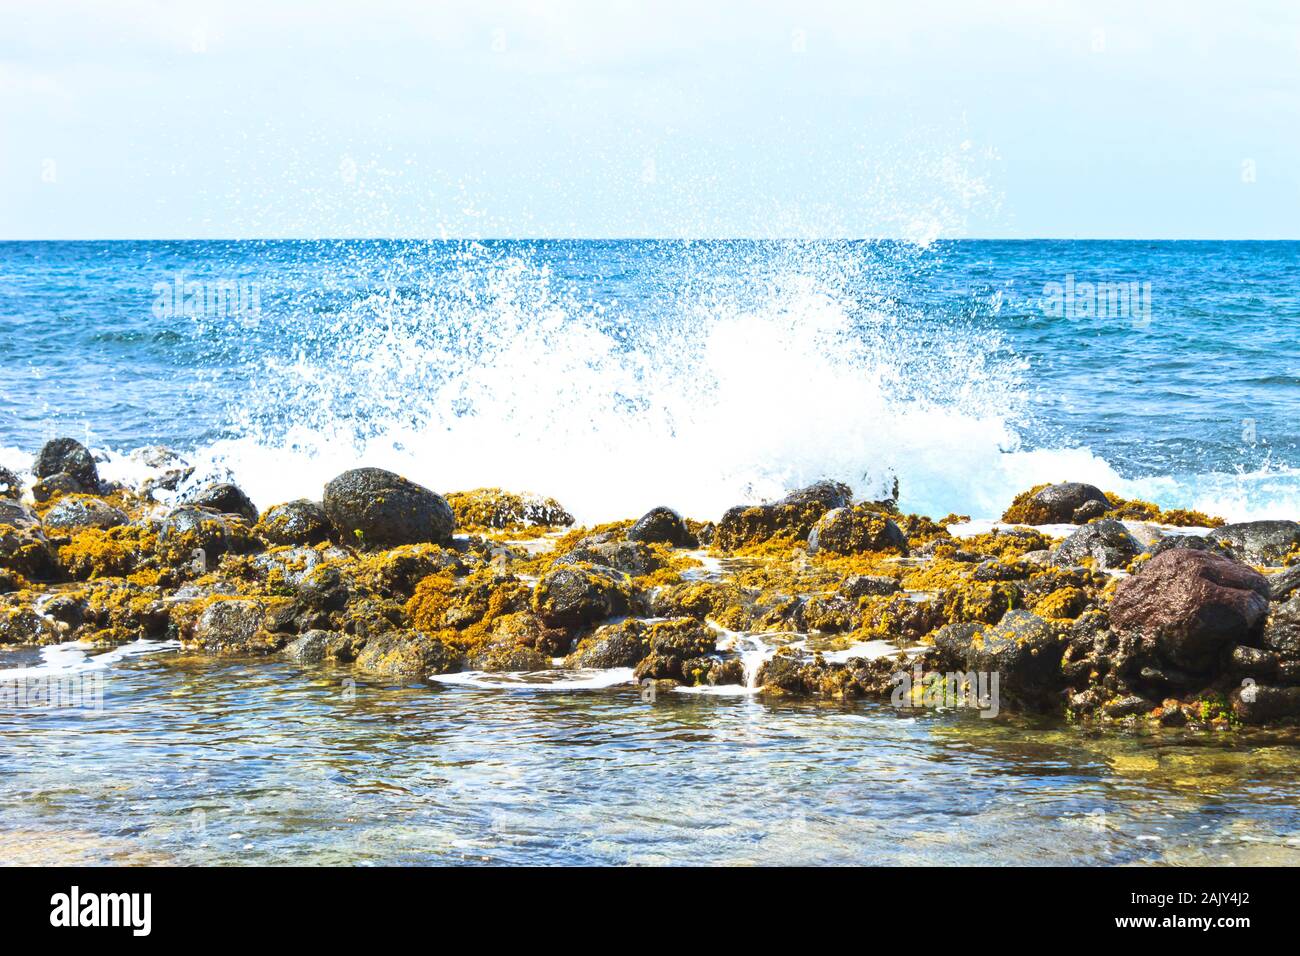 Wellenschürze auf Felsbarriere, die mit verwittertem Meereskraut bedeckt ist Stockfoto